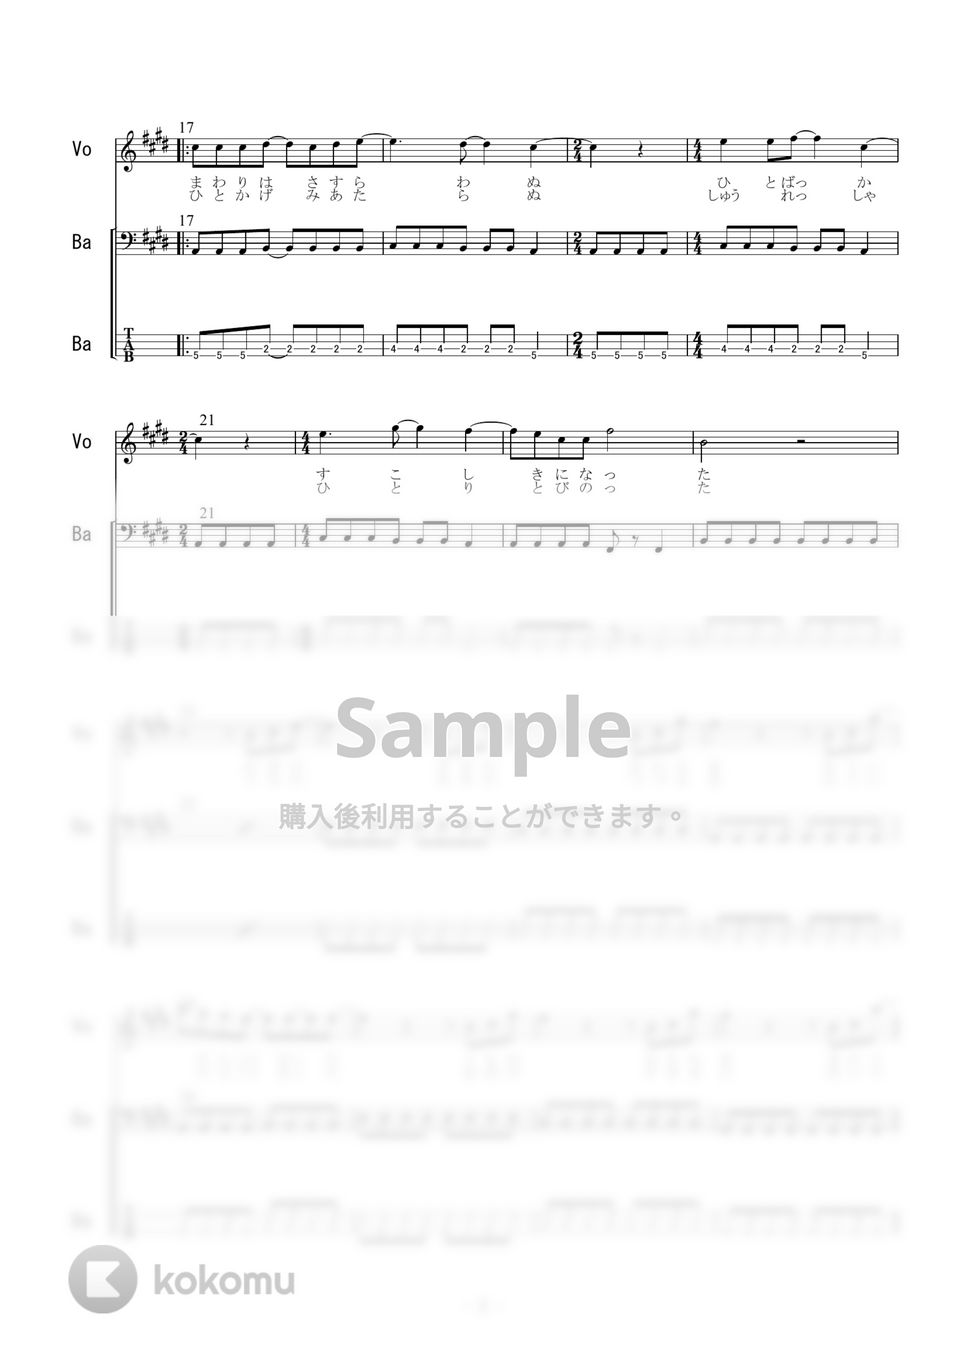 奥田民生 - さすらい (ベース) by 二次元楽譜製作所